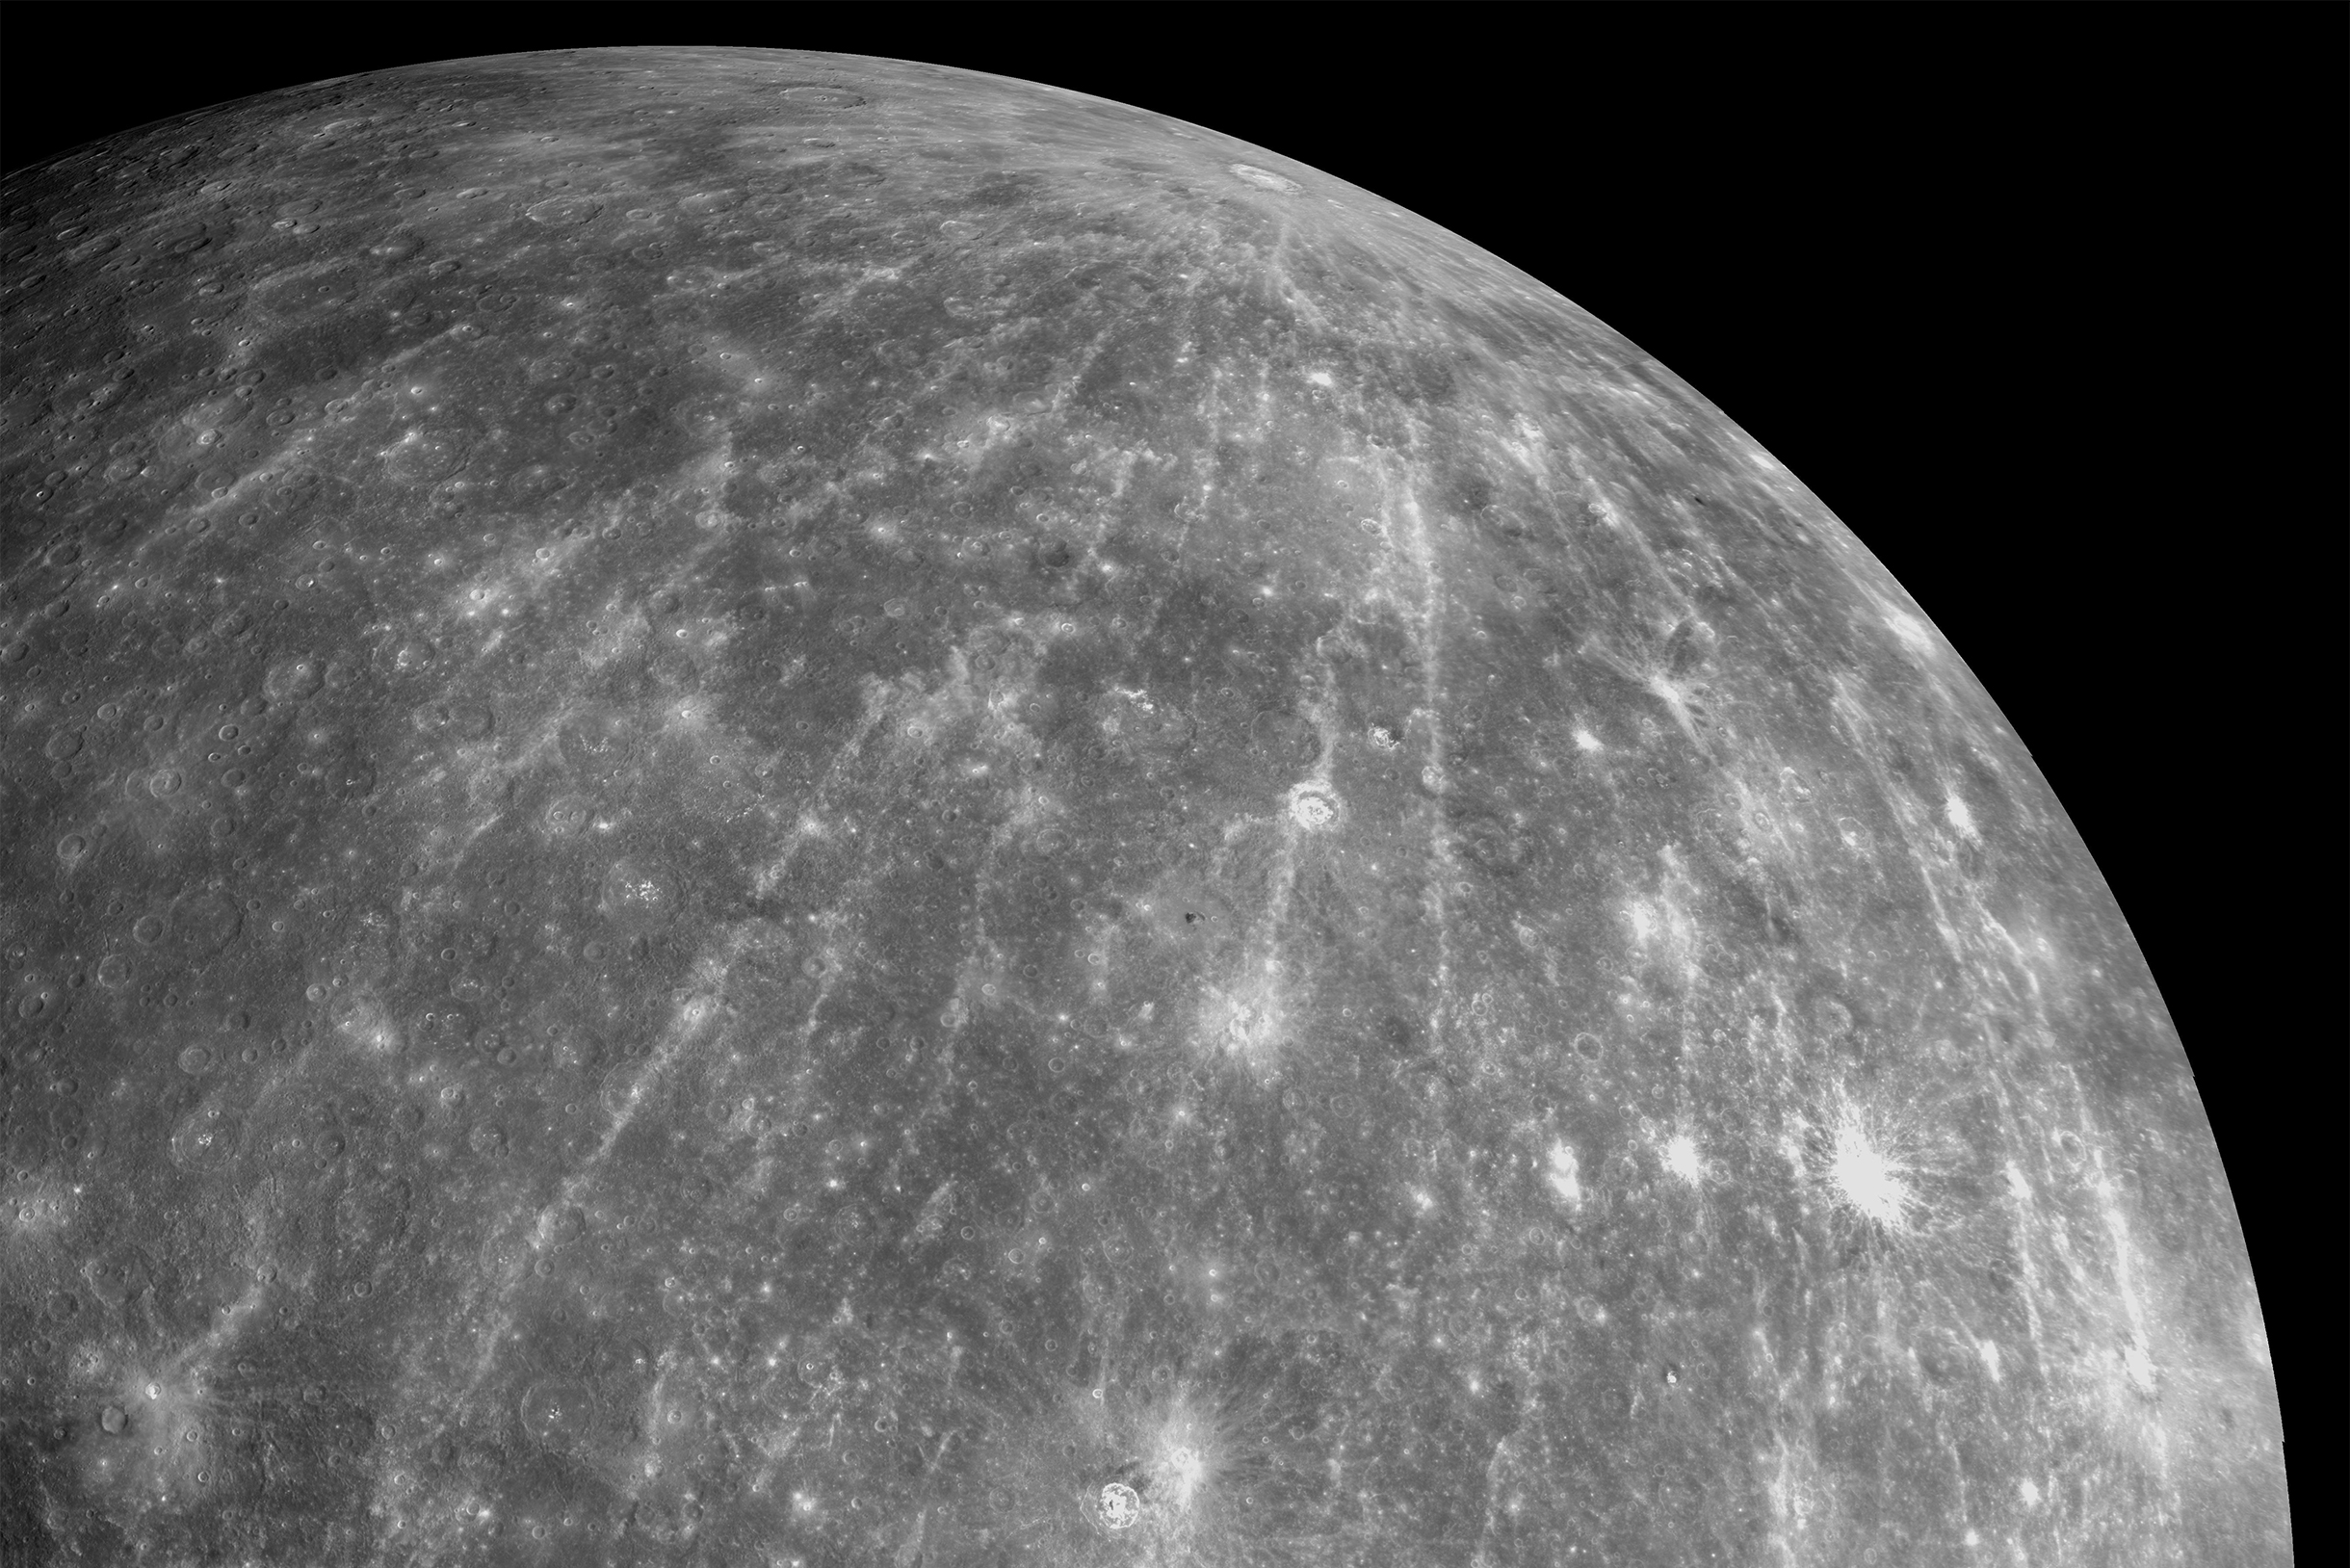 Кратер Хокусай на поверхности Меркурия — необычный. Это лучевой кратер, потому сначала его приняли не за след от удара, а за вулкан. Фото: NASA / Johns Hopkins University Applied Physics Laboratory / Carnegie Institution of Washington